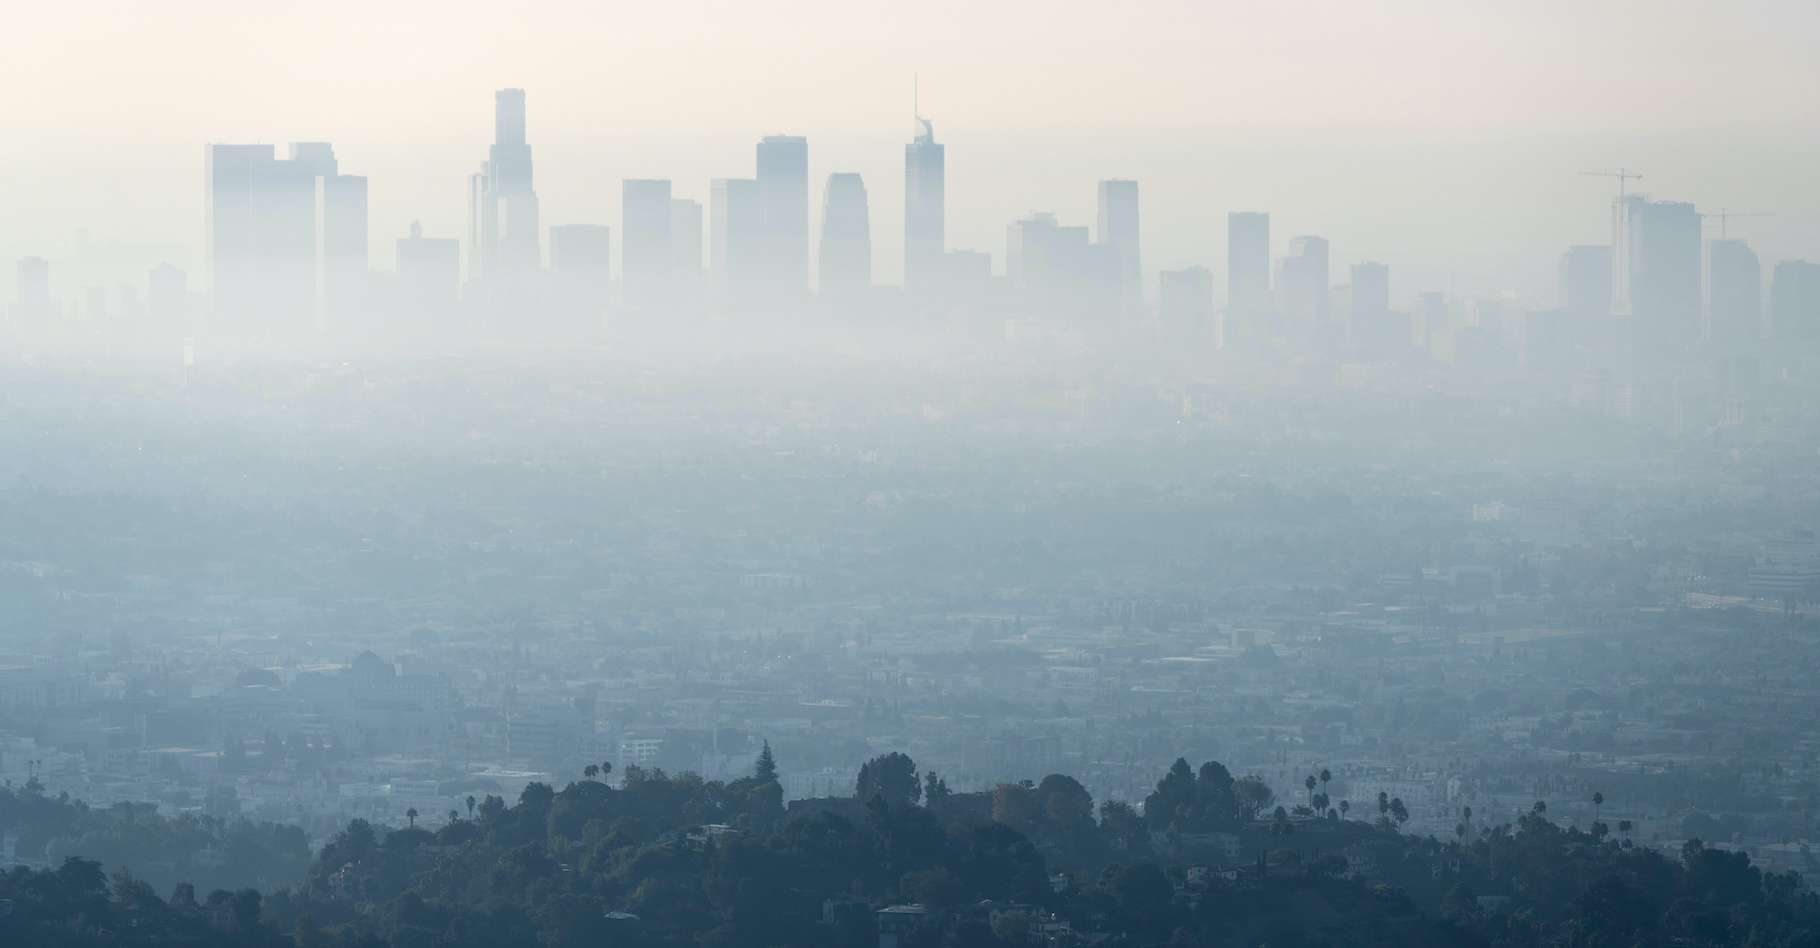 Dans le monde, la pollution de l’air fait perdre à chaque être humain environ 2,2 années d’espérance de vie. © trekandphoto, Adobe Stock